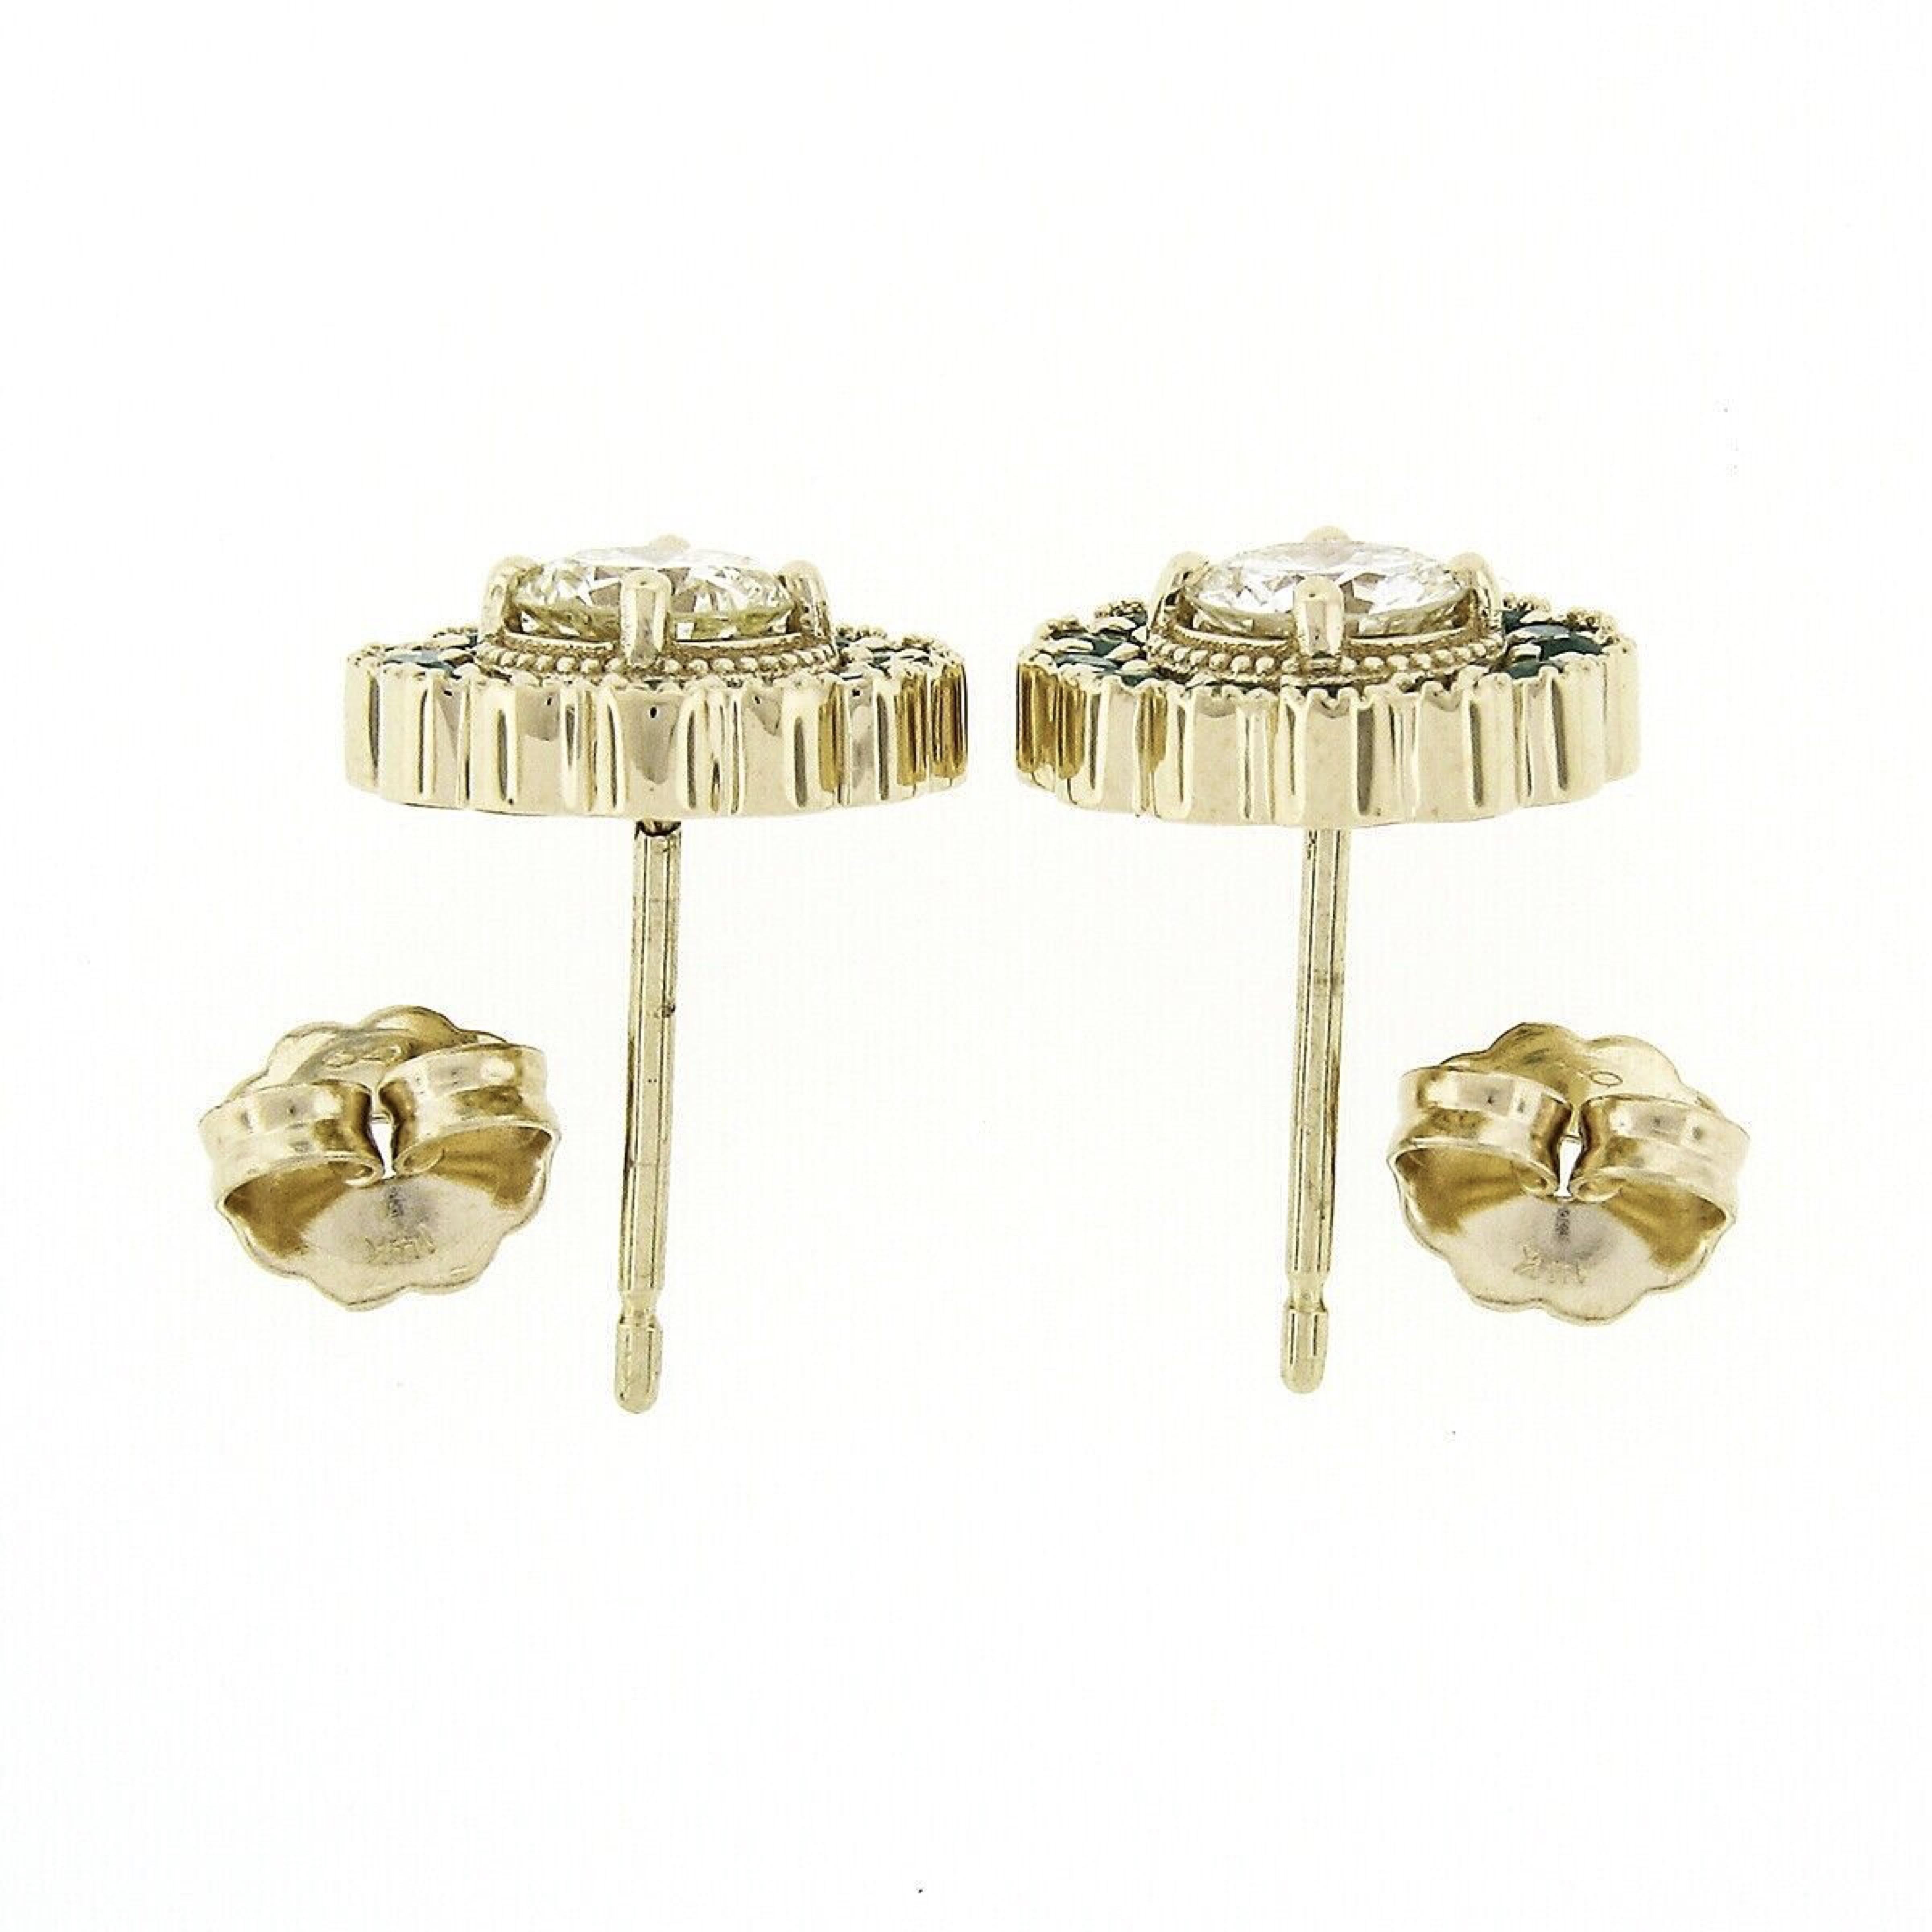 flower cluster diamond earrings